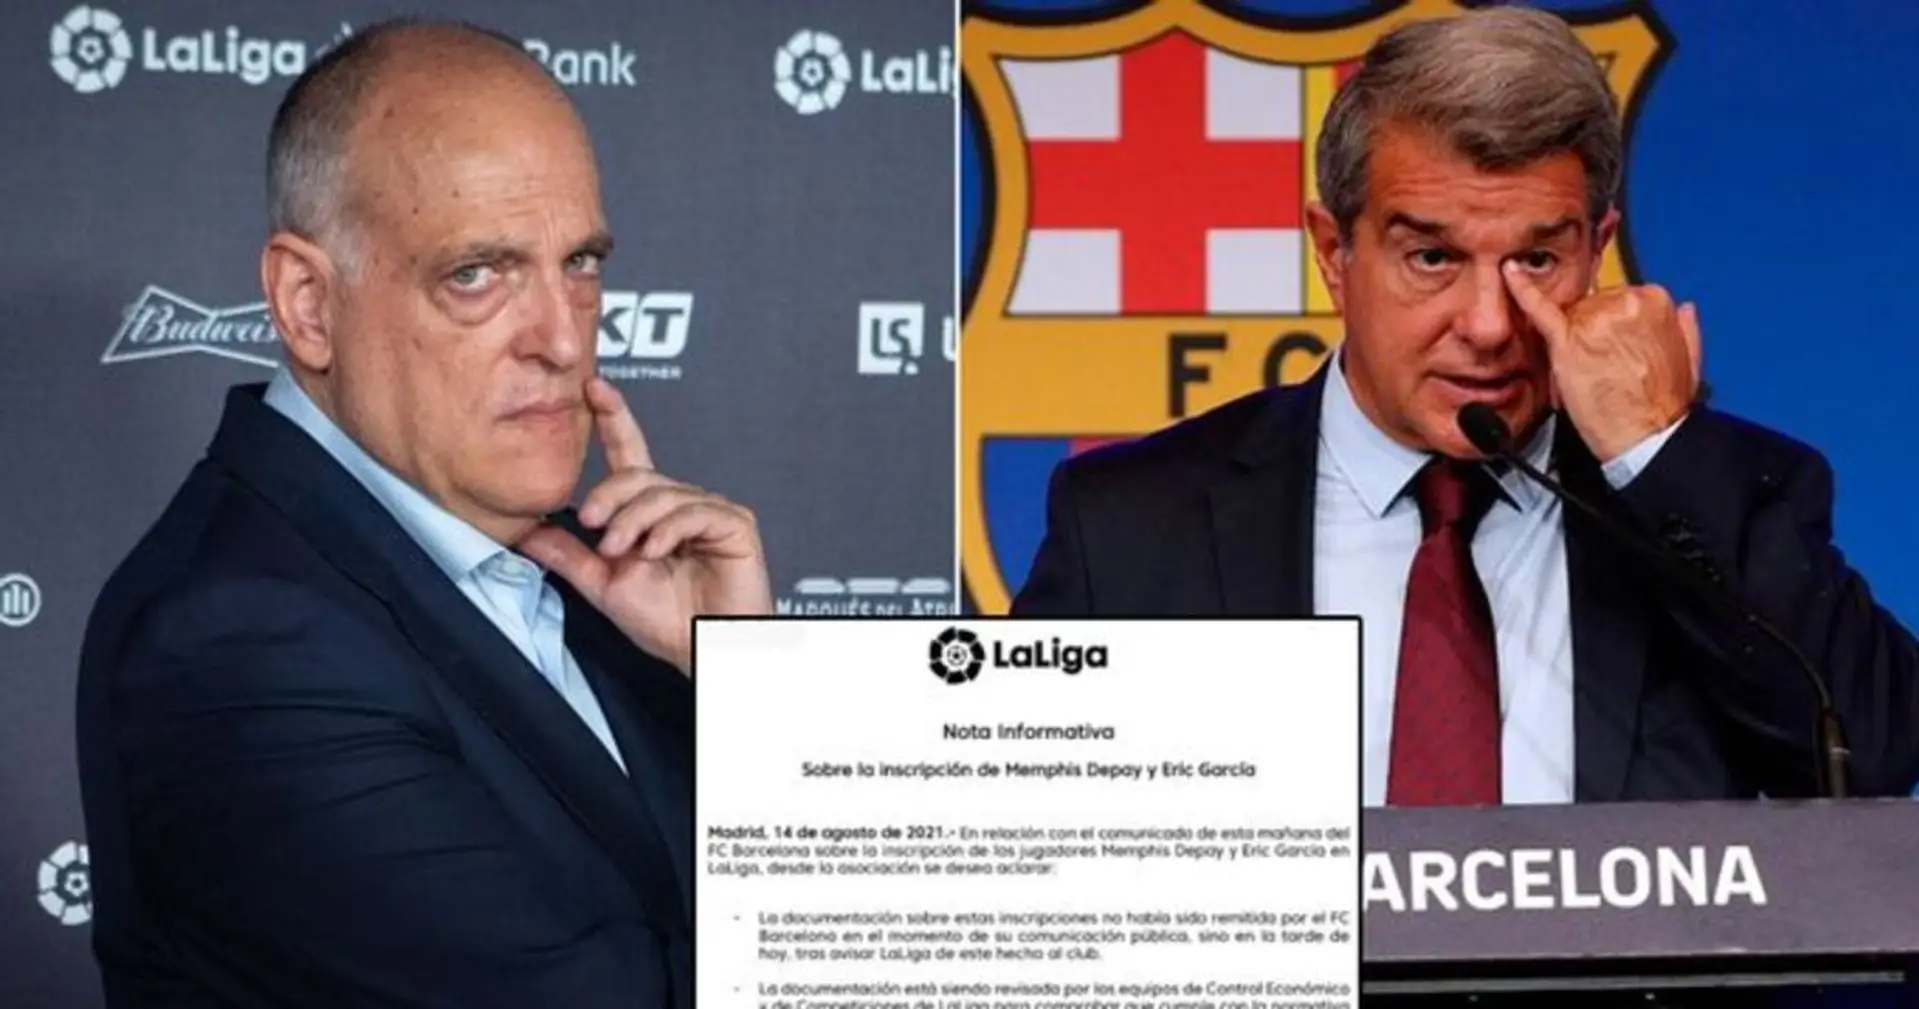 ÚLTIMA HORA: LaLiga publica un comunicado que afirma que el Barça aún no ha inscrito a Depay y García